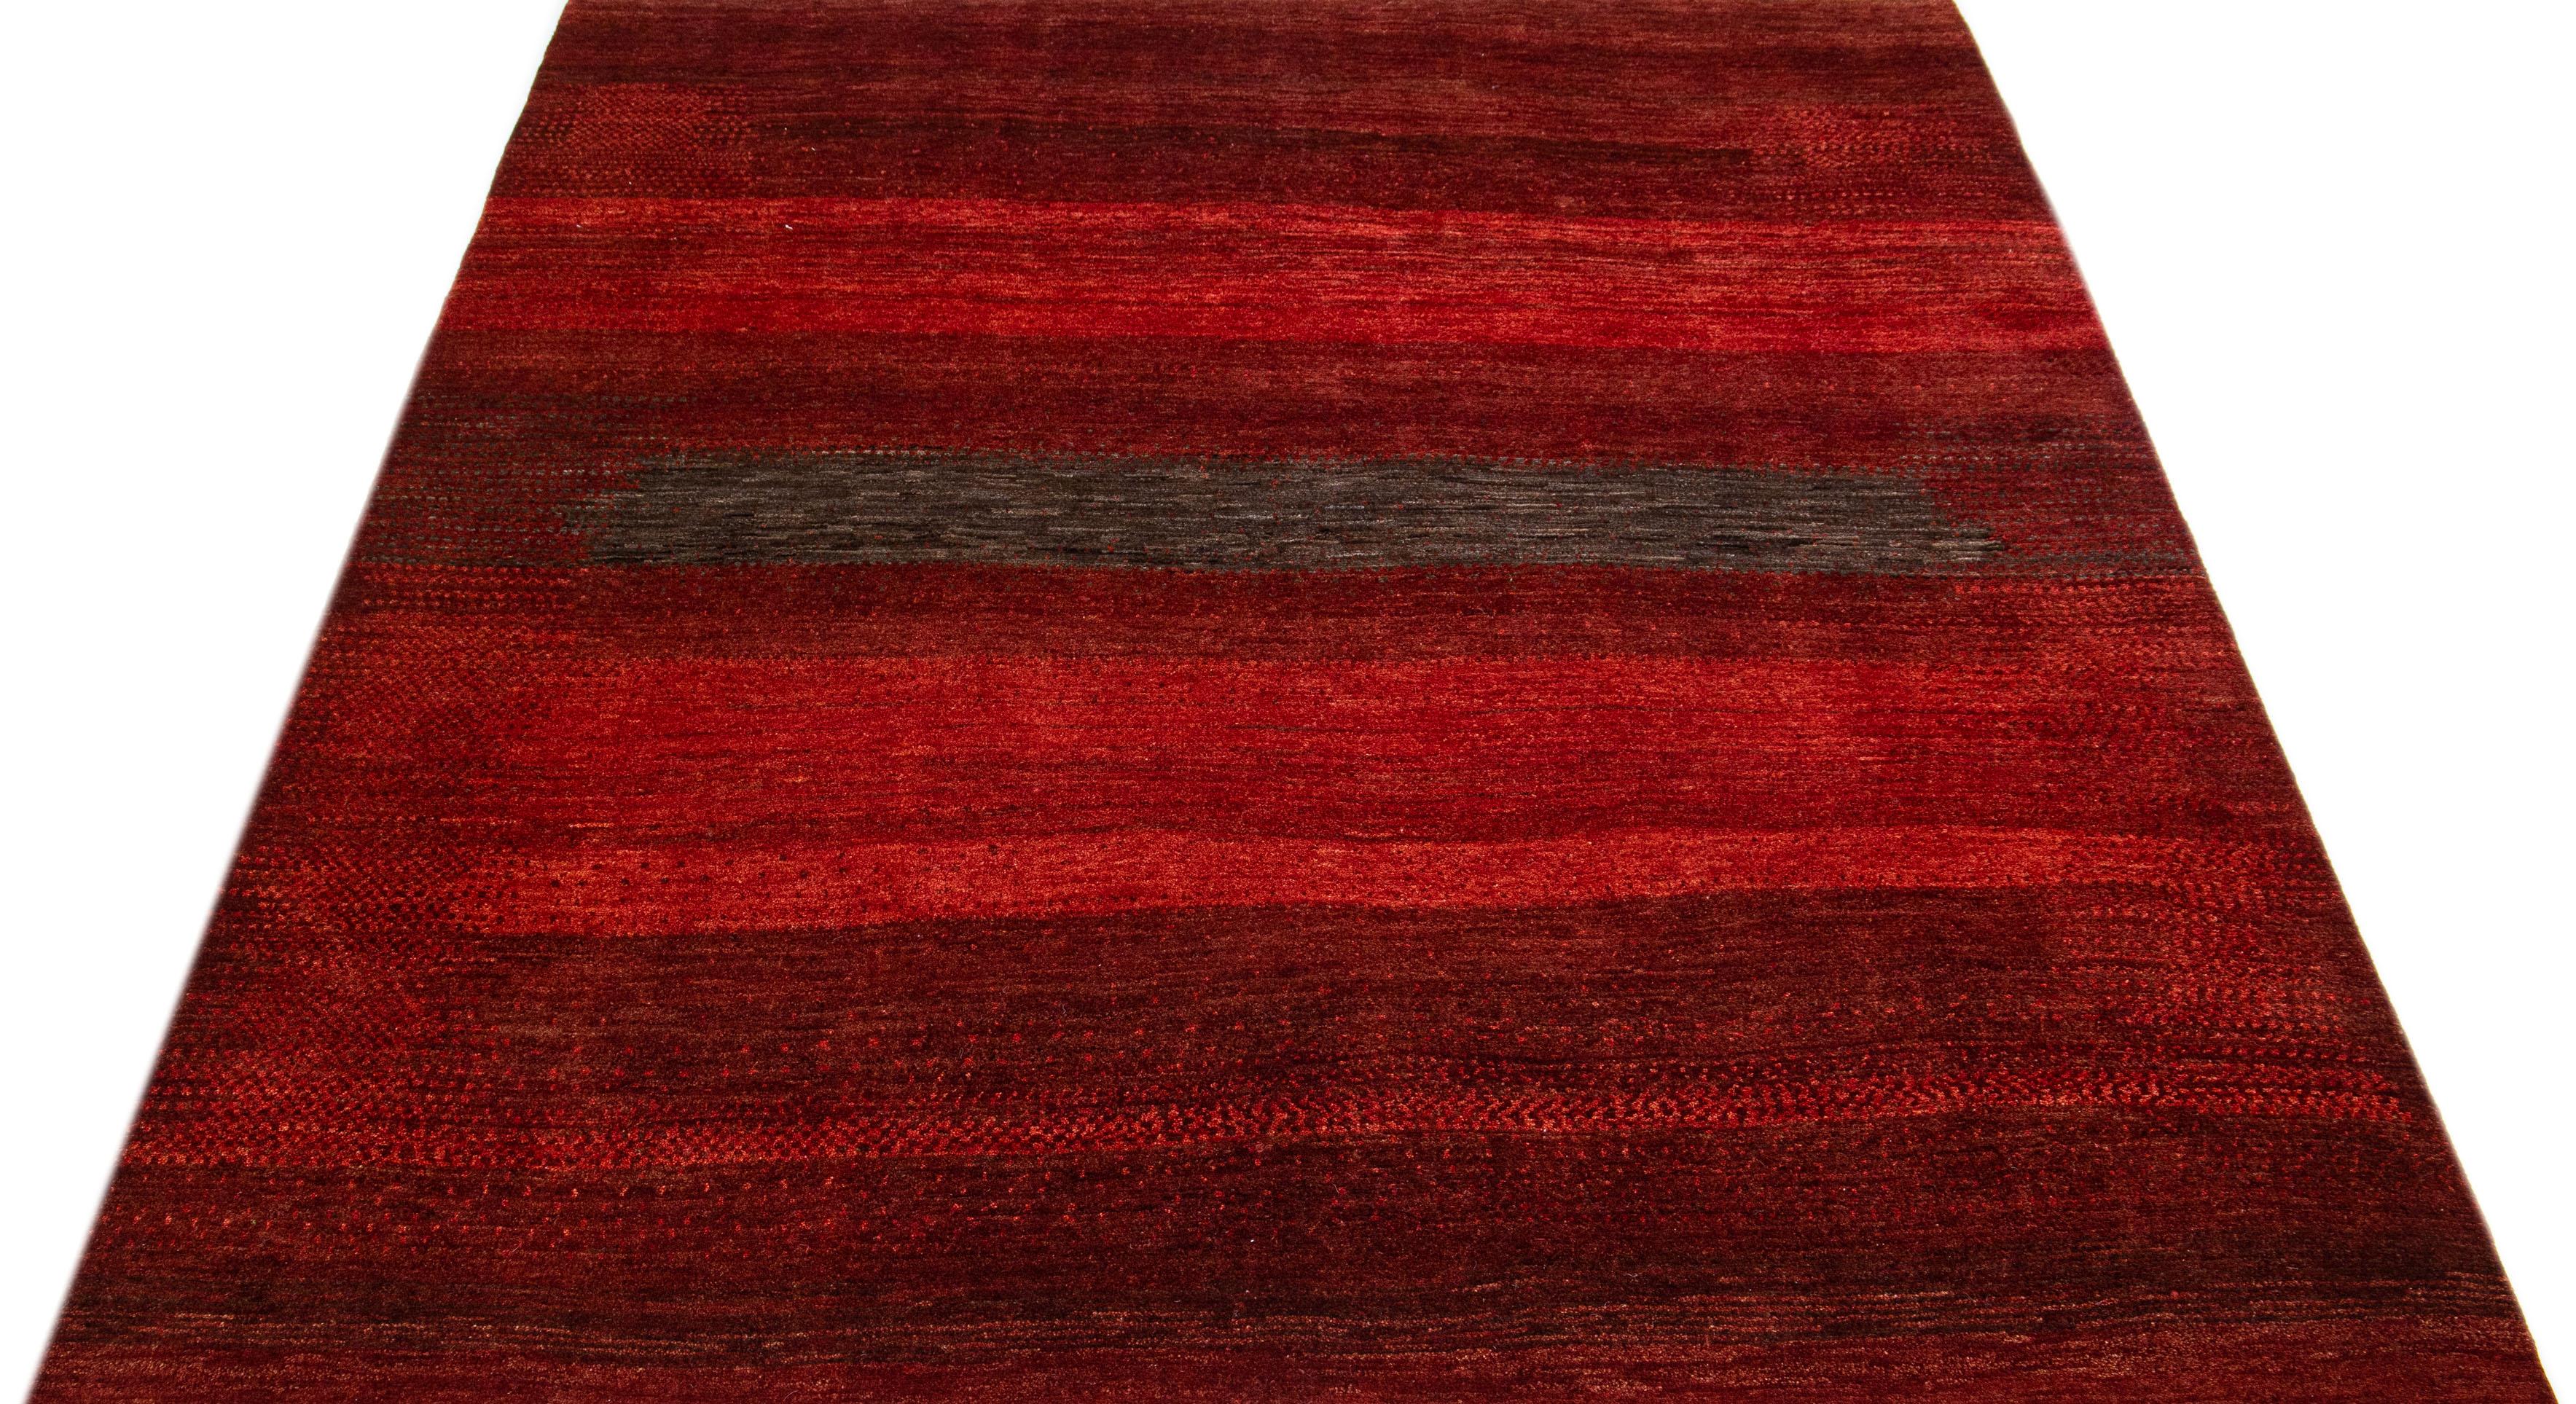 Ce tapis en laine, fabriqué à la main dans le style Gabbeh, présente une esthétique abstraite avec des accents bruns sur un champ de couleur rouge vibrant.

Ce tapis mesure 7'8